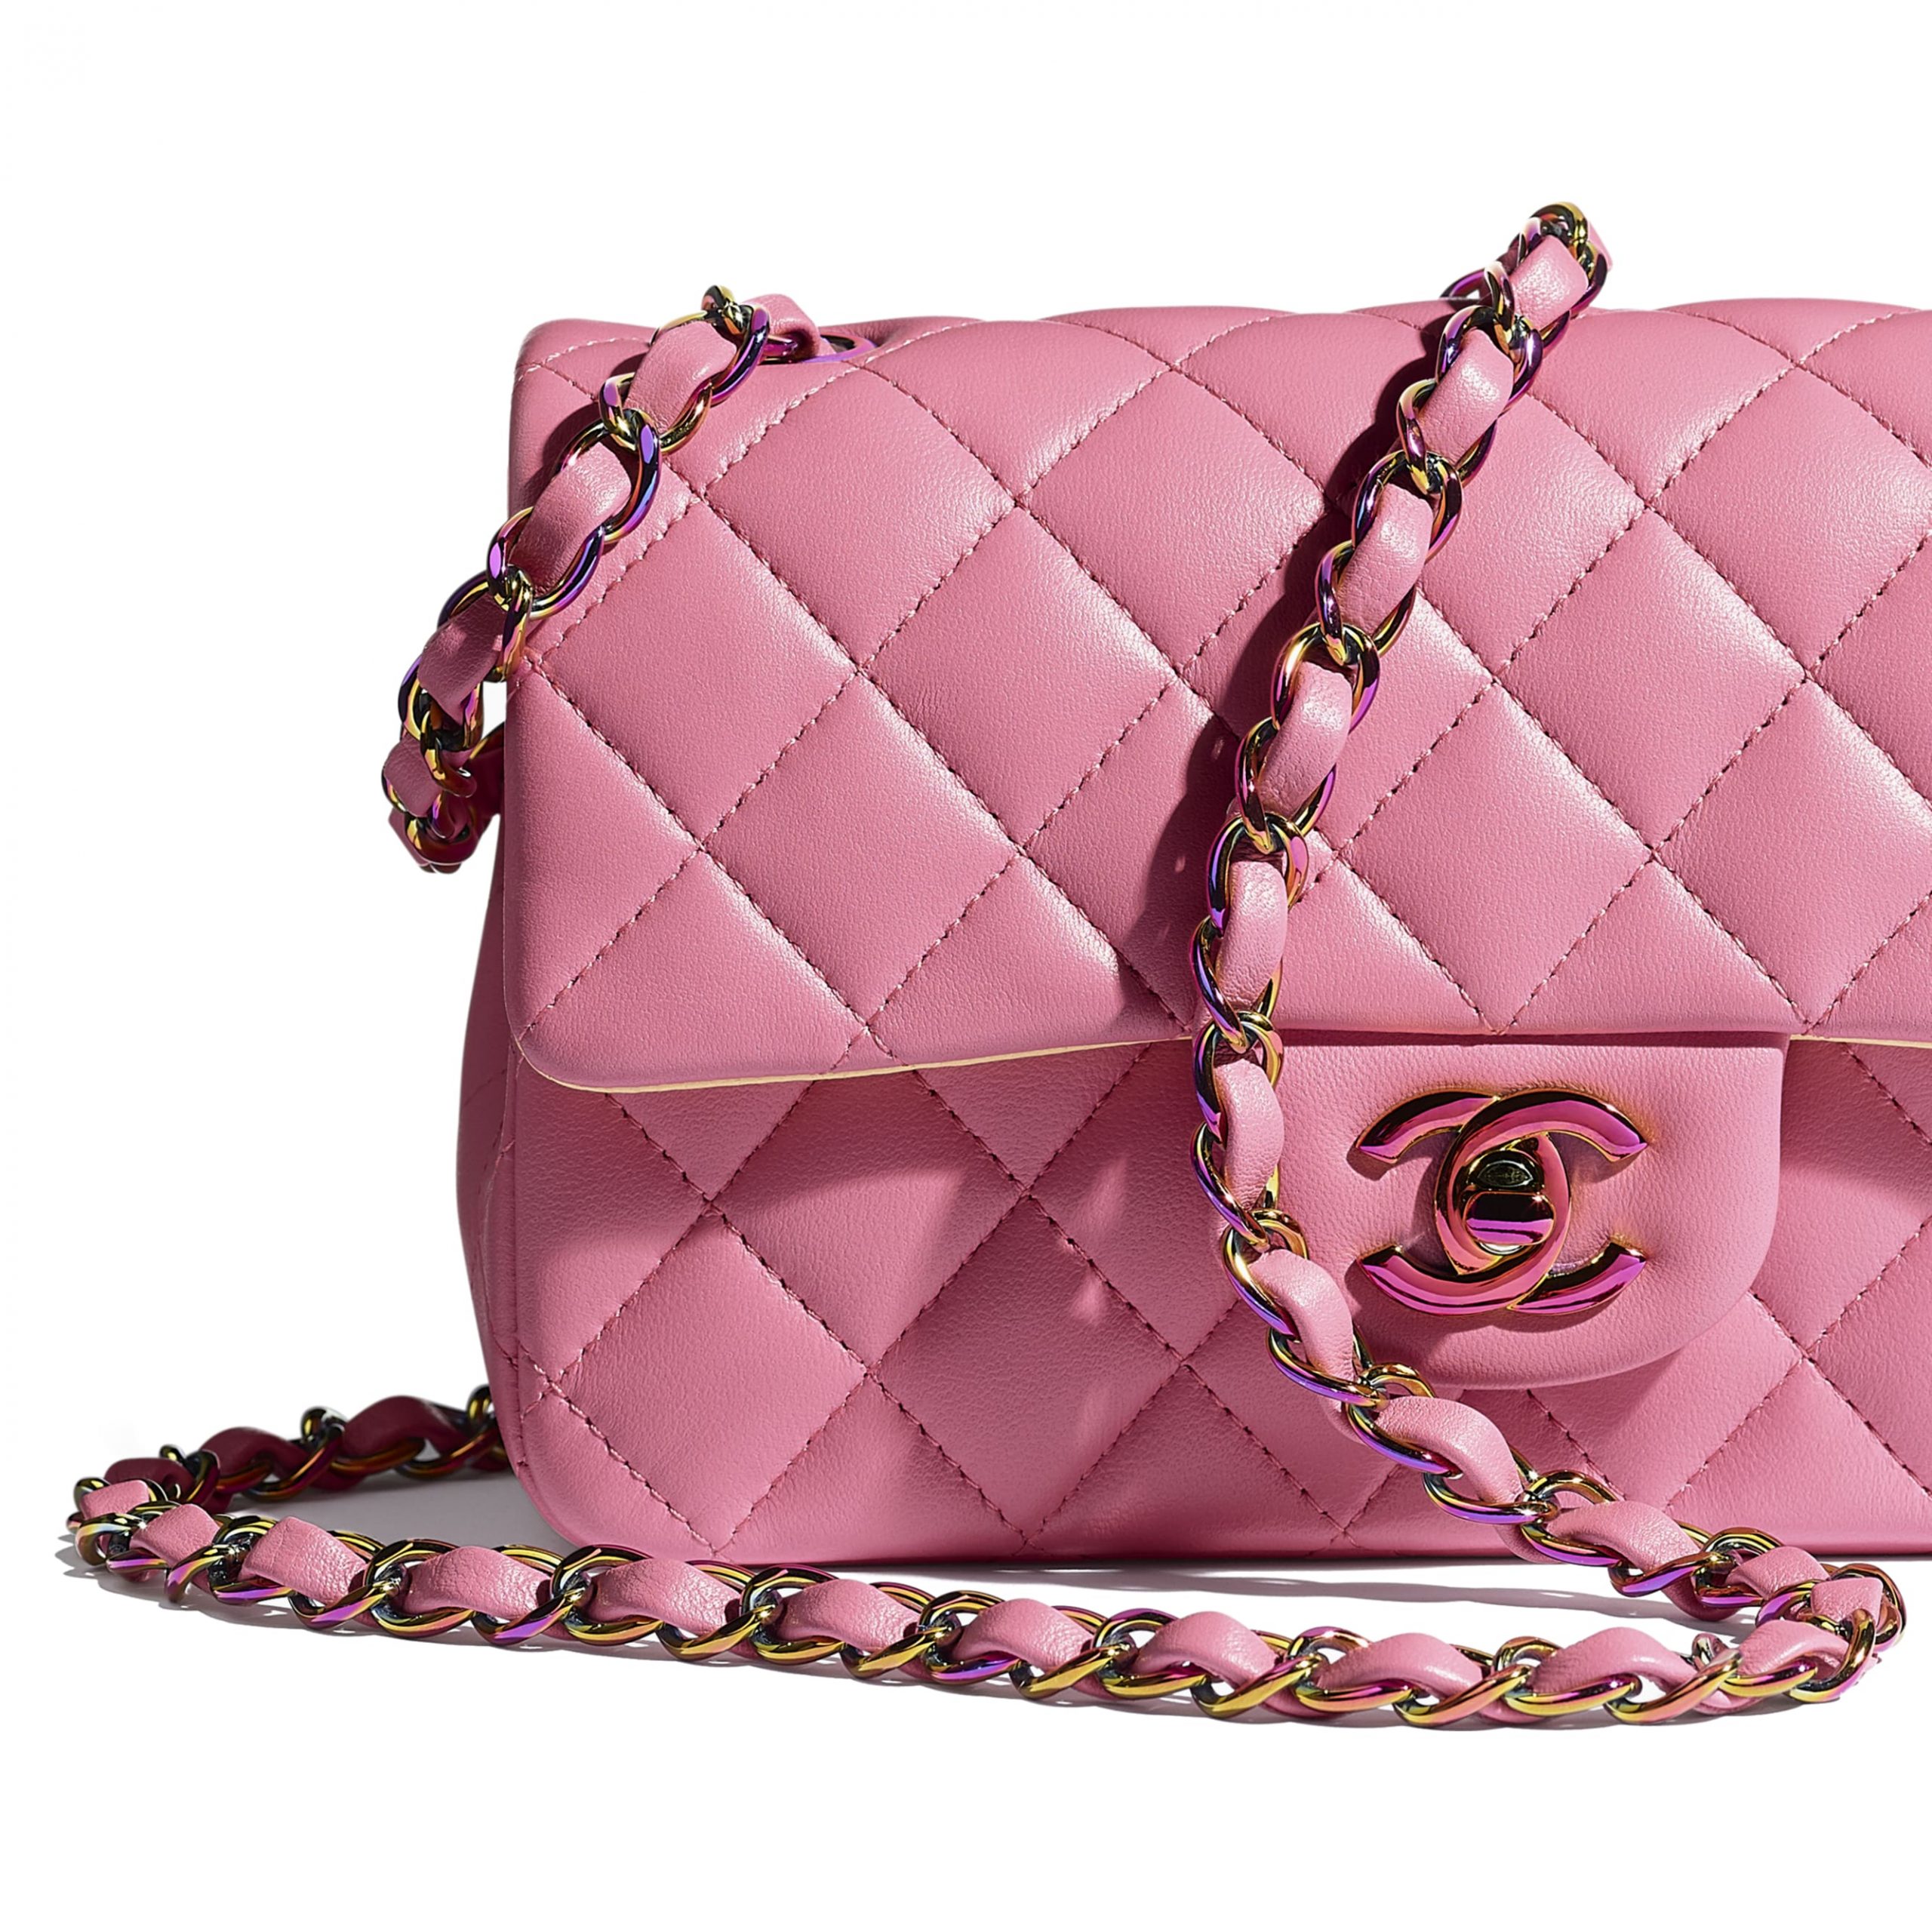 Top 12 Luxury Handbag Brands 2021 | WP Diamonds